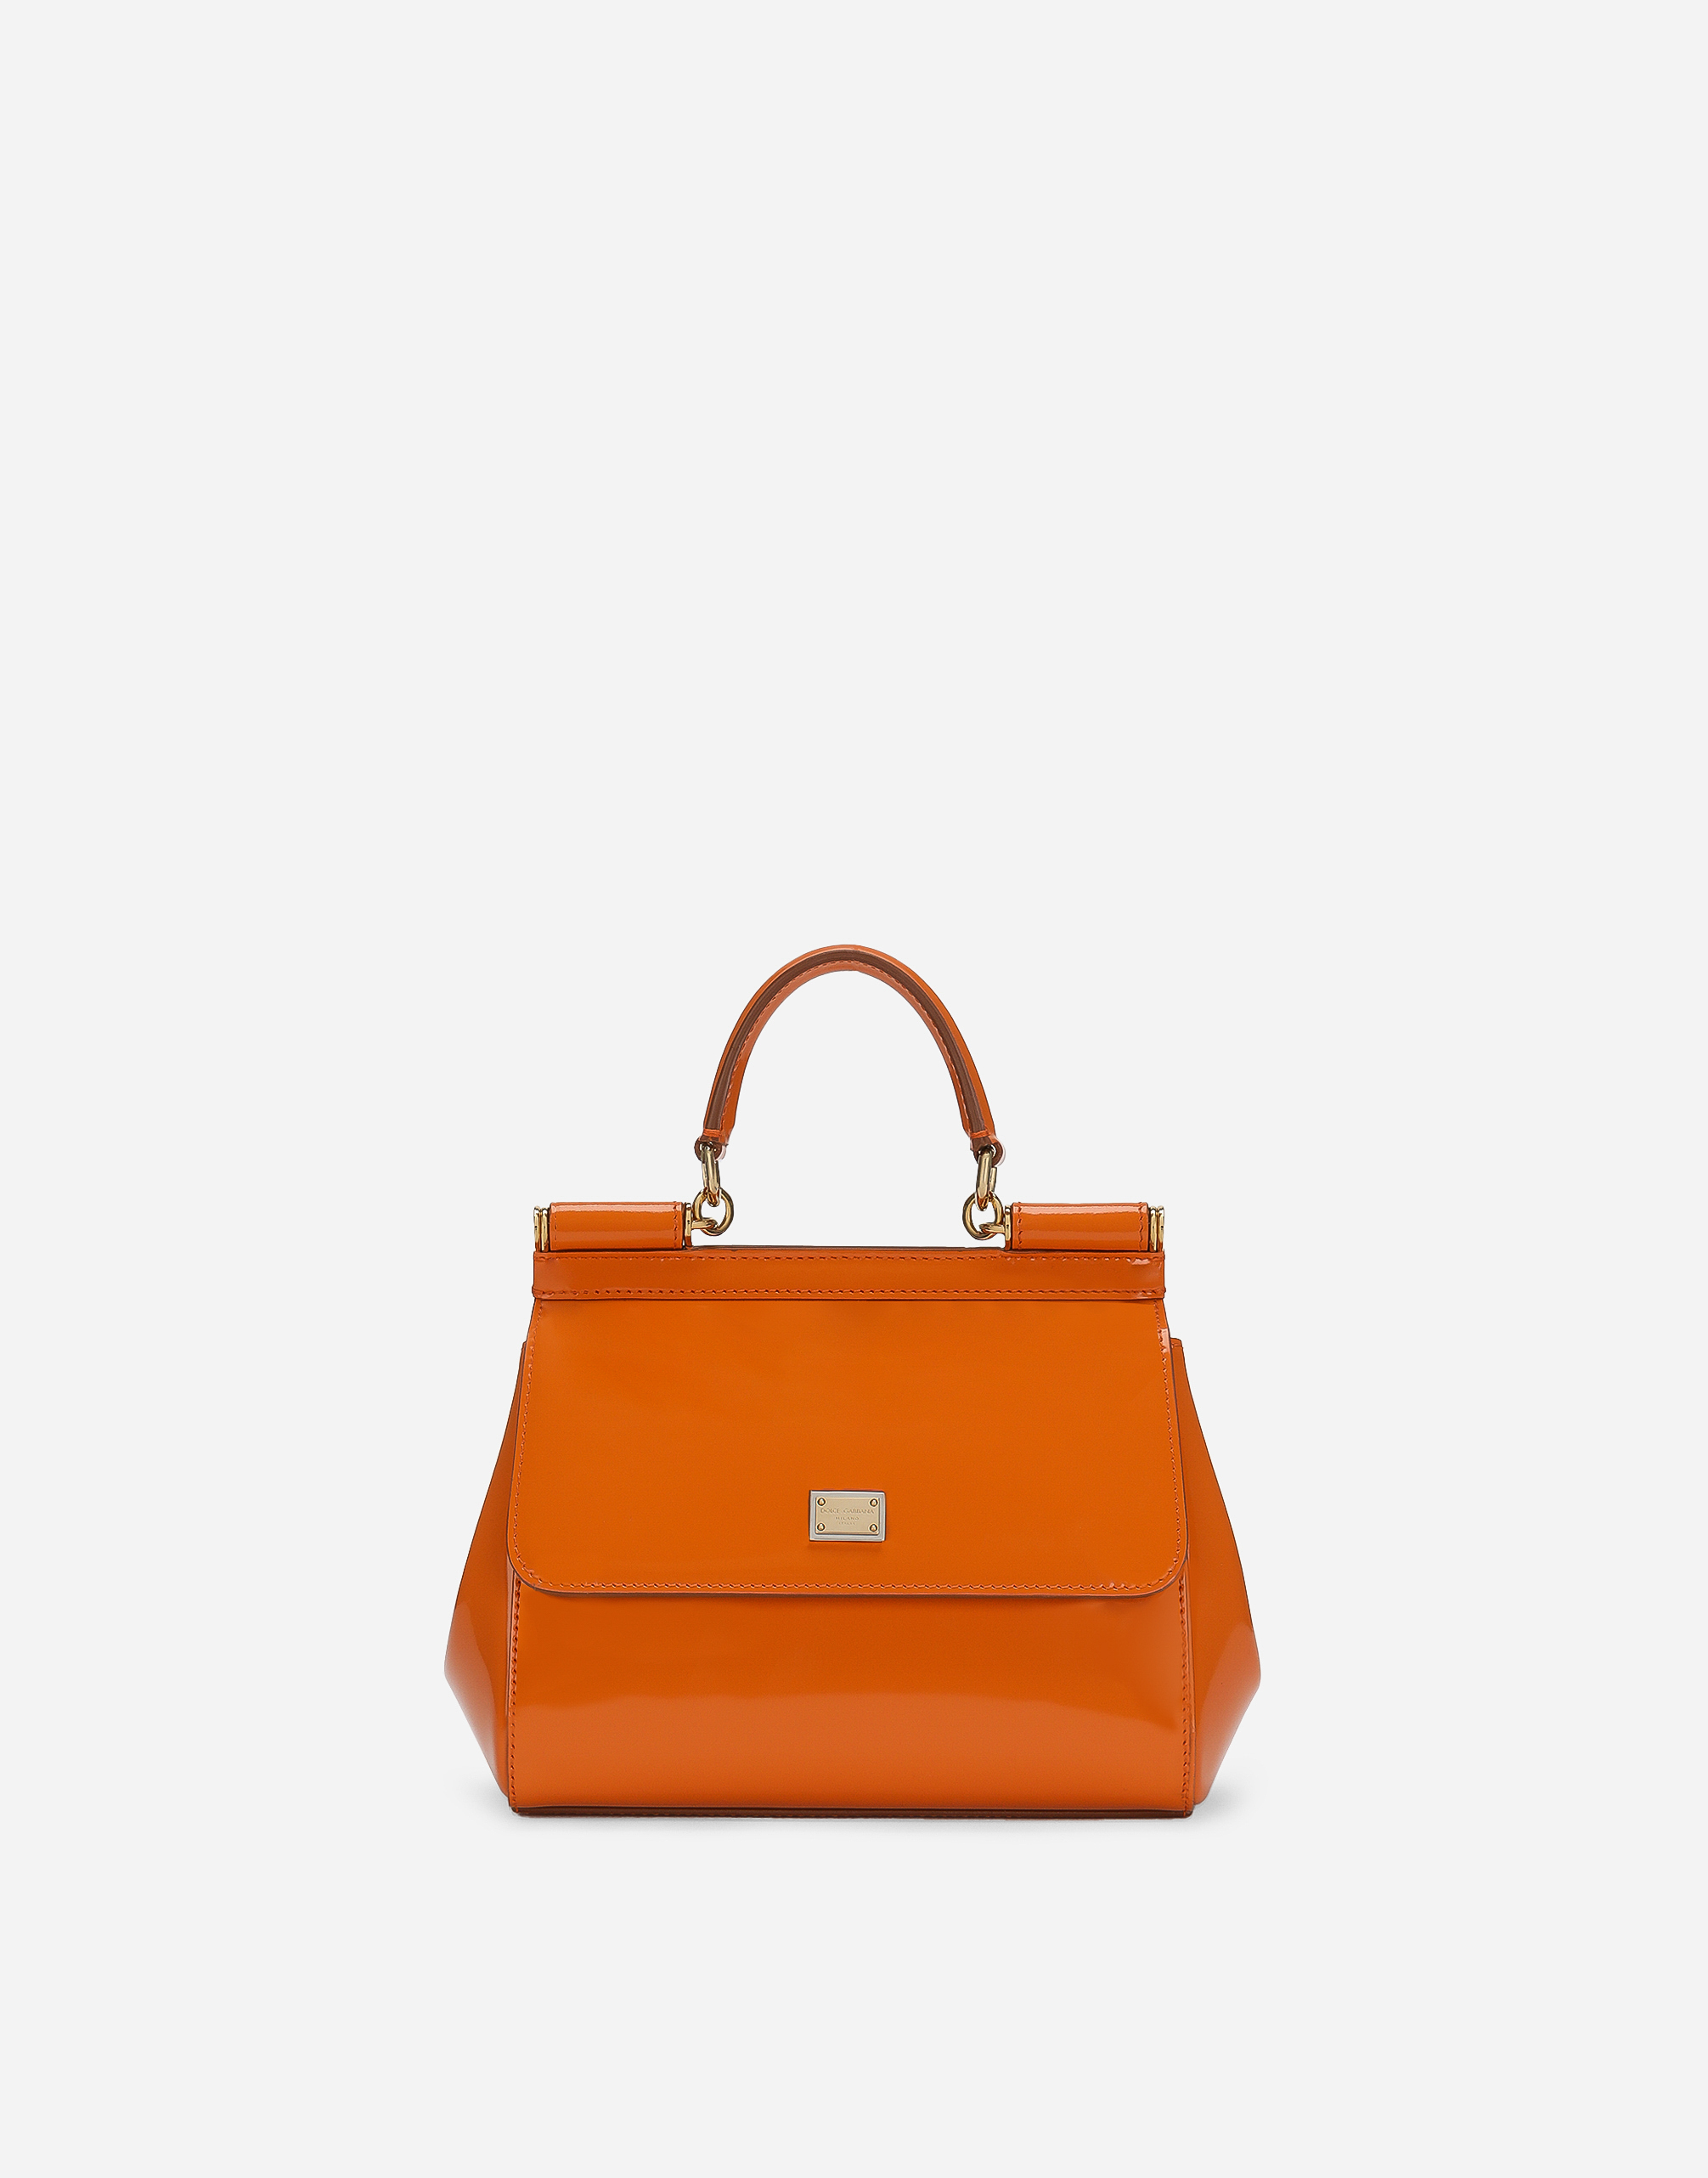 Medium Sicily handbag in Orange